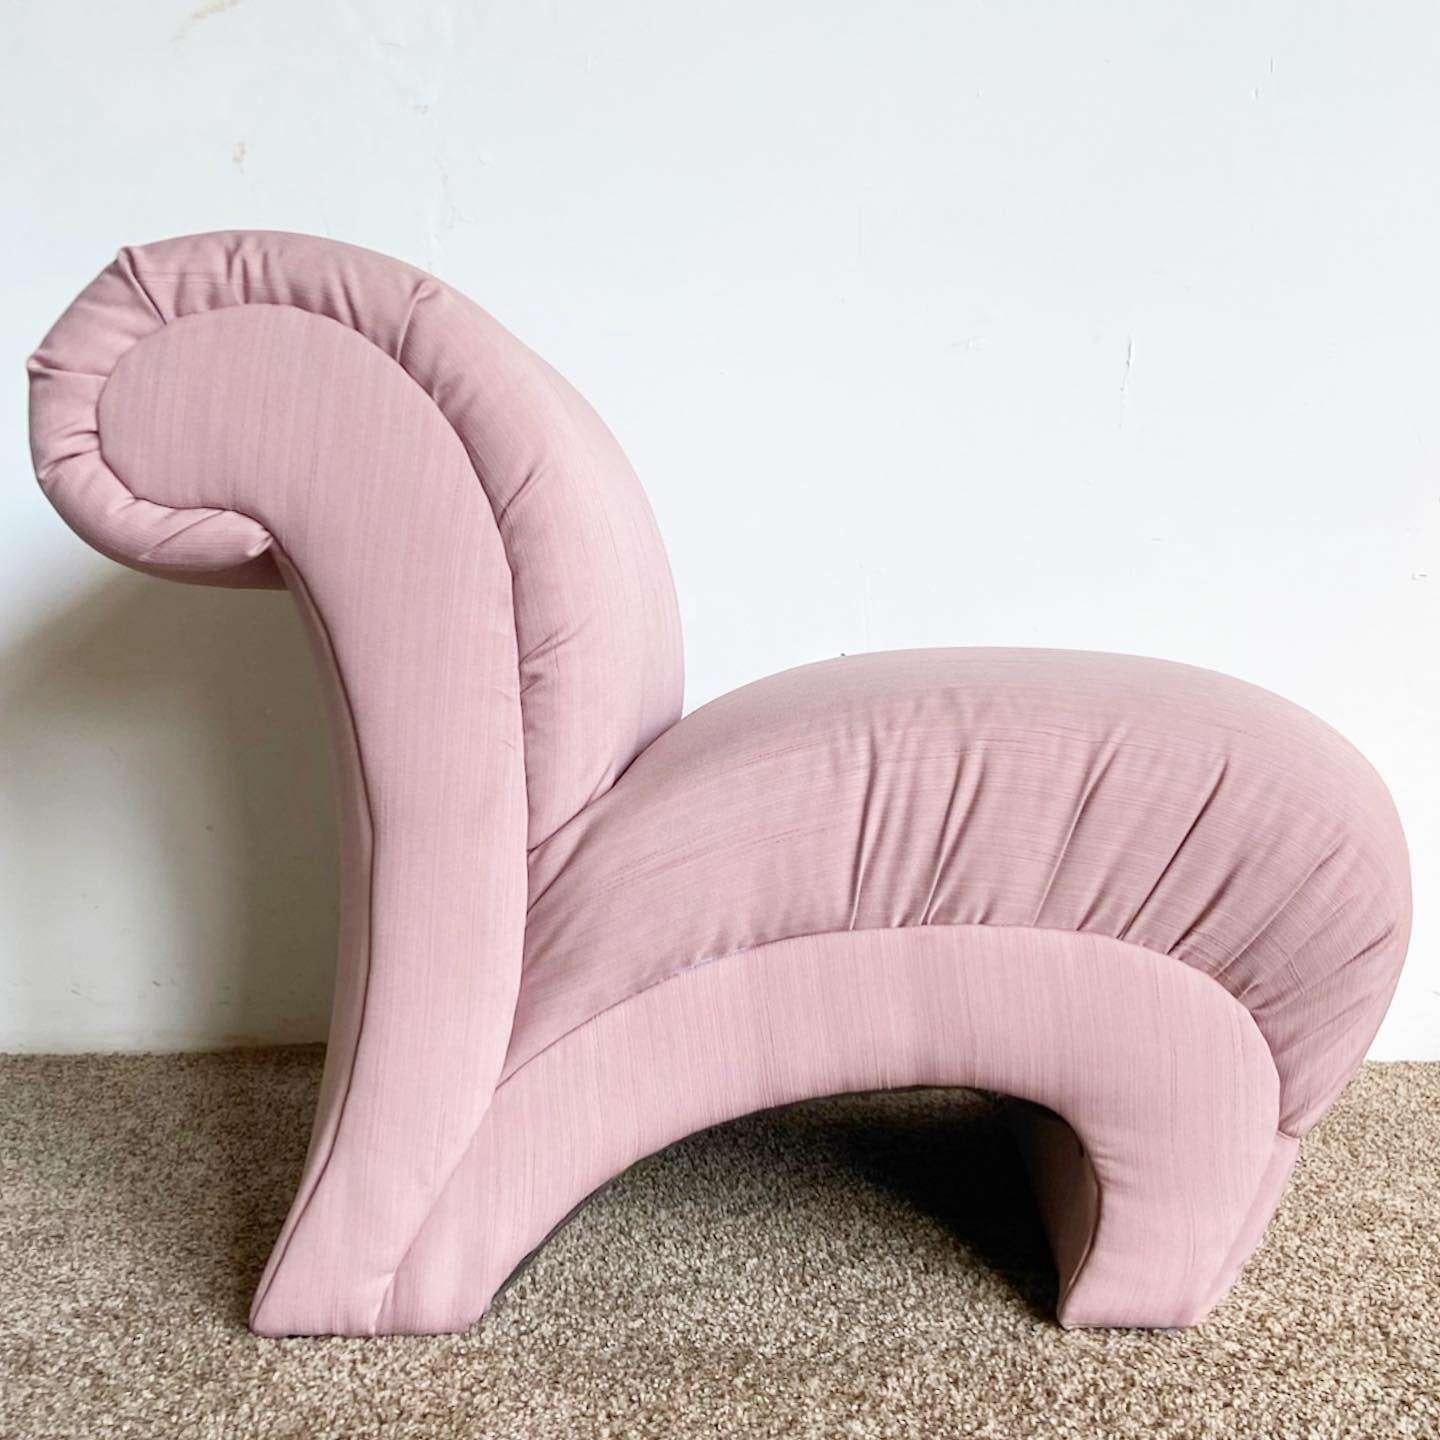 Unglaublicher postmoderner skulpturaler Loungesessel/Sofasessel im Vintage-Stil. Der Stoff ist durchgehend rosa.
